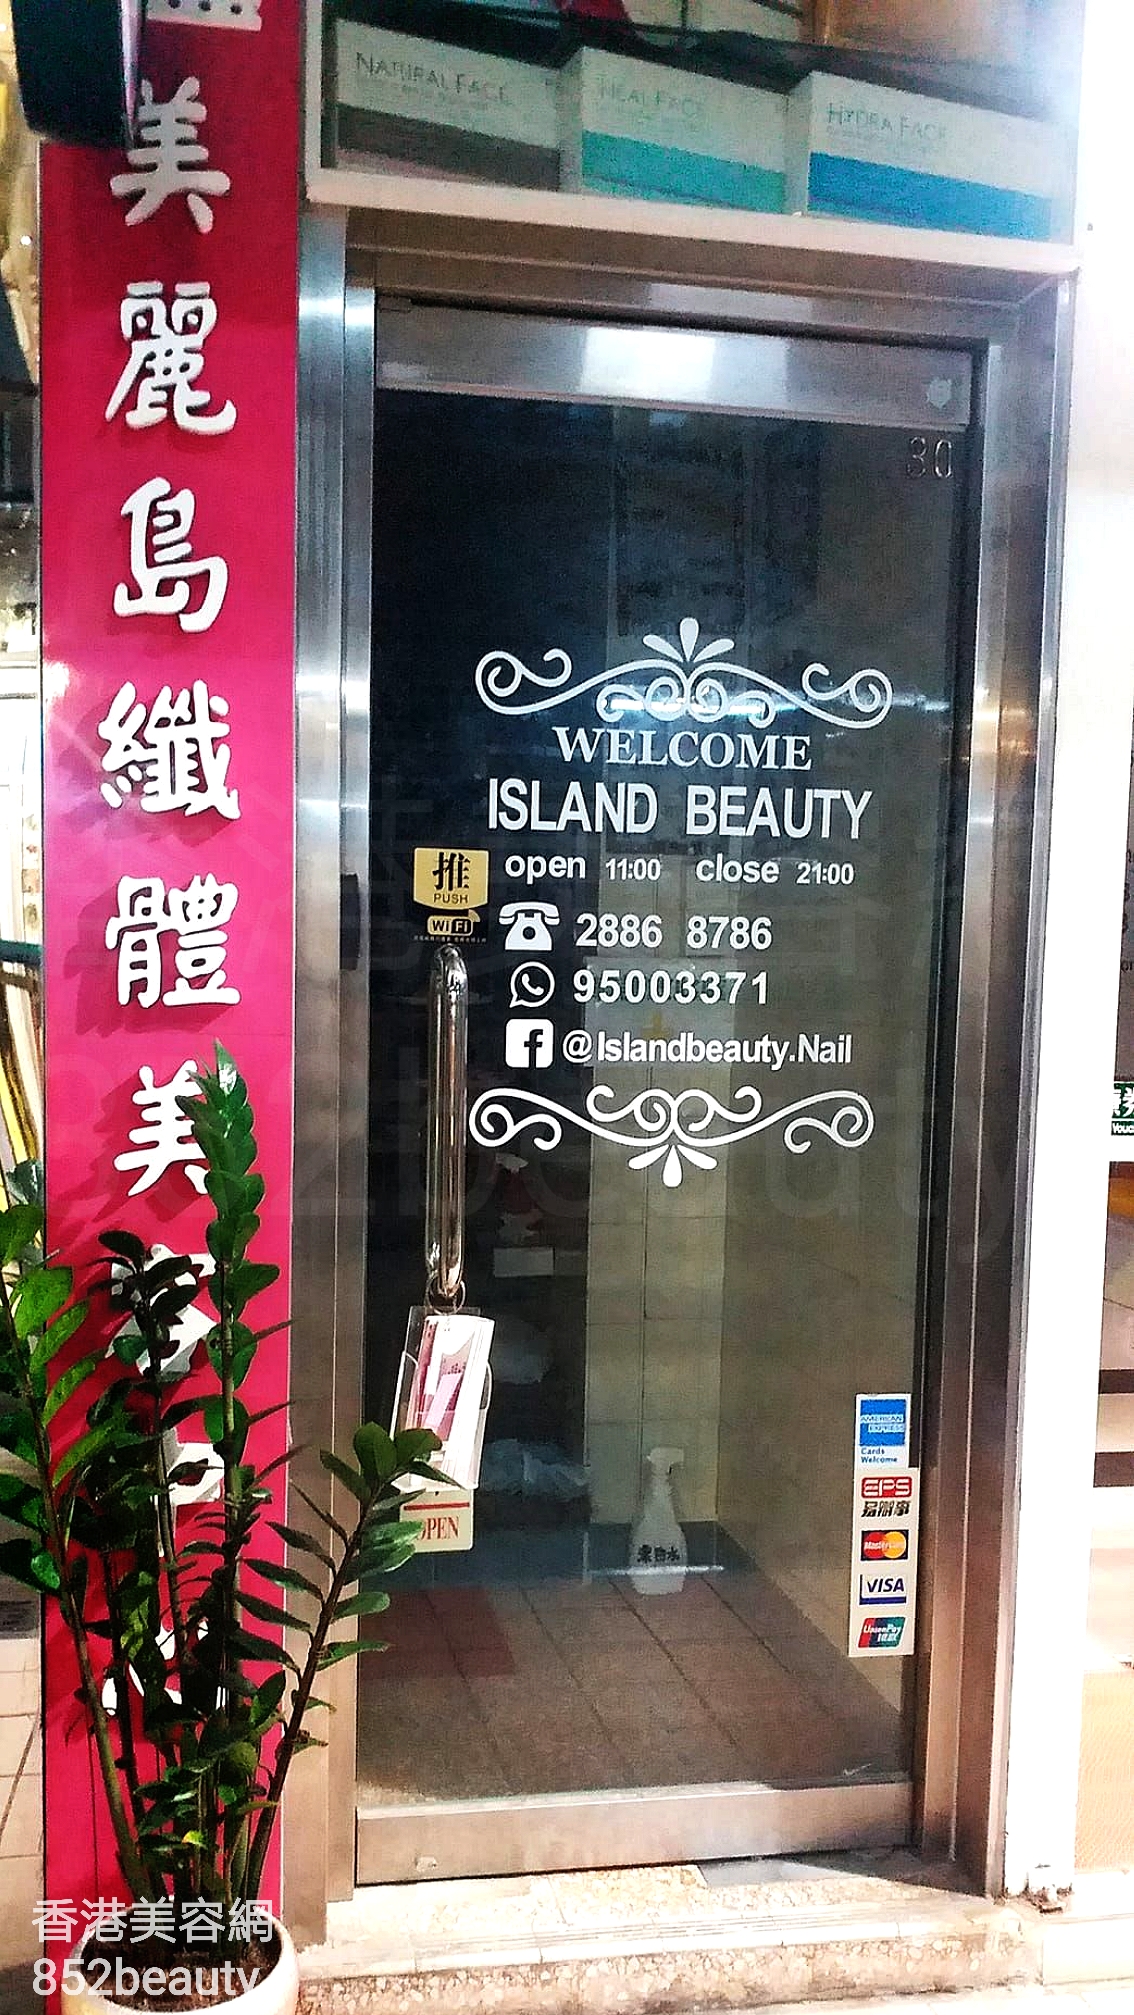 修眉/眼睫毛: Island Beauty 美麗鳥纖體美容中心